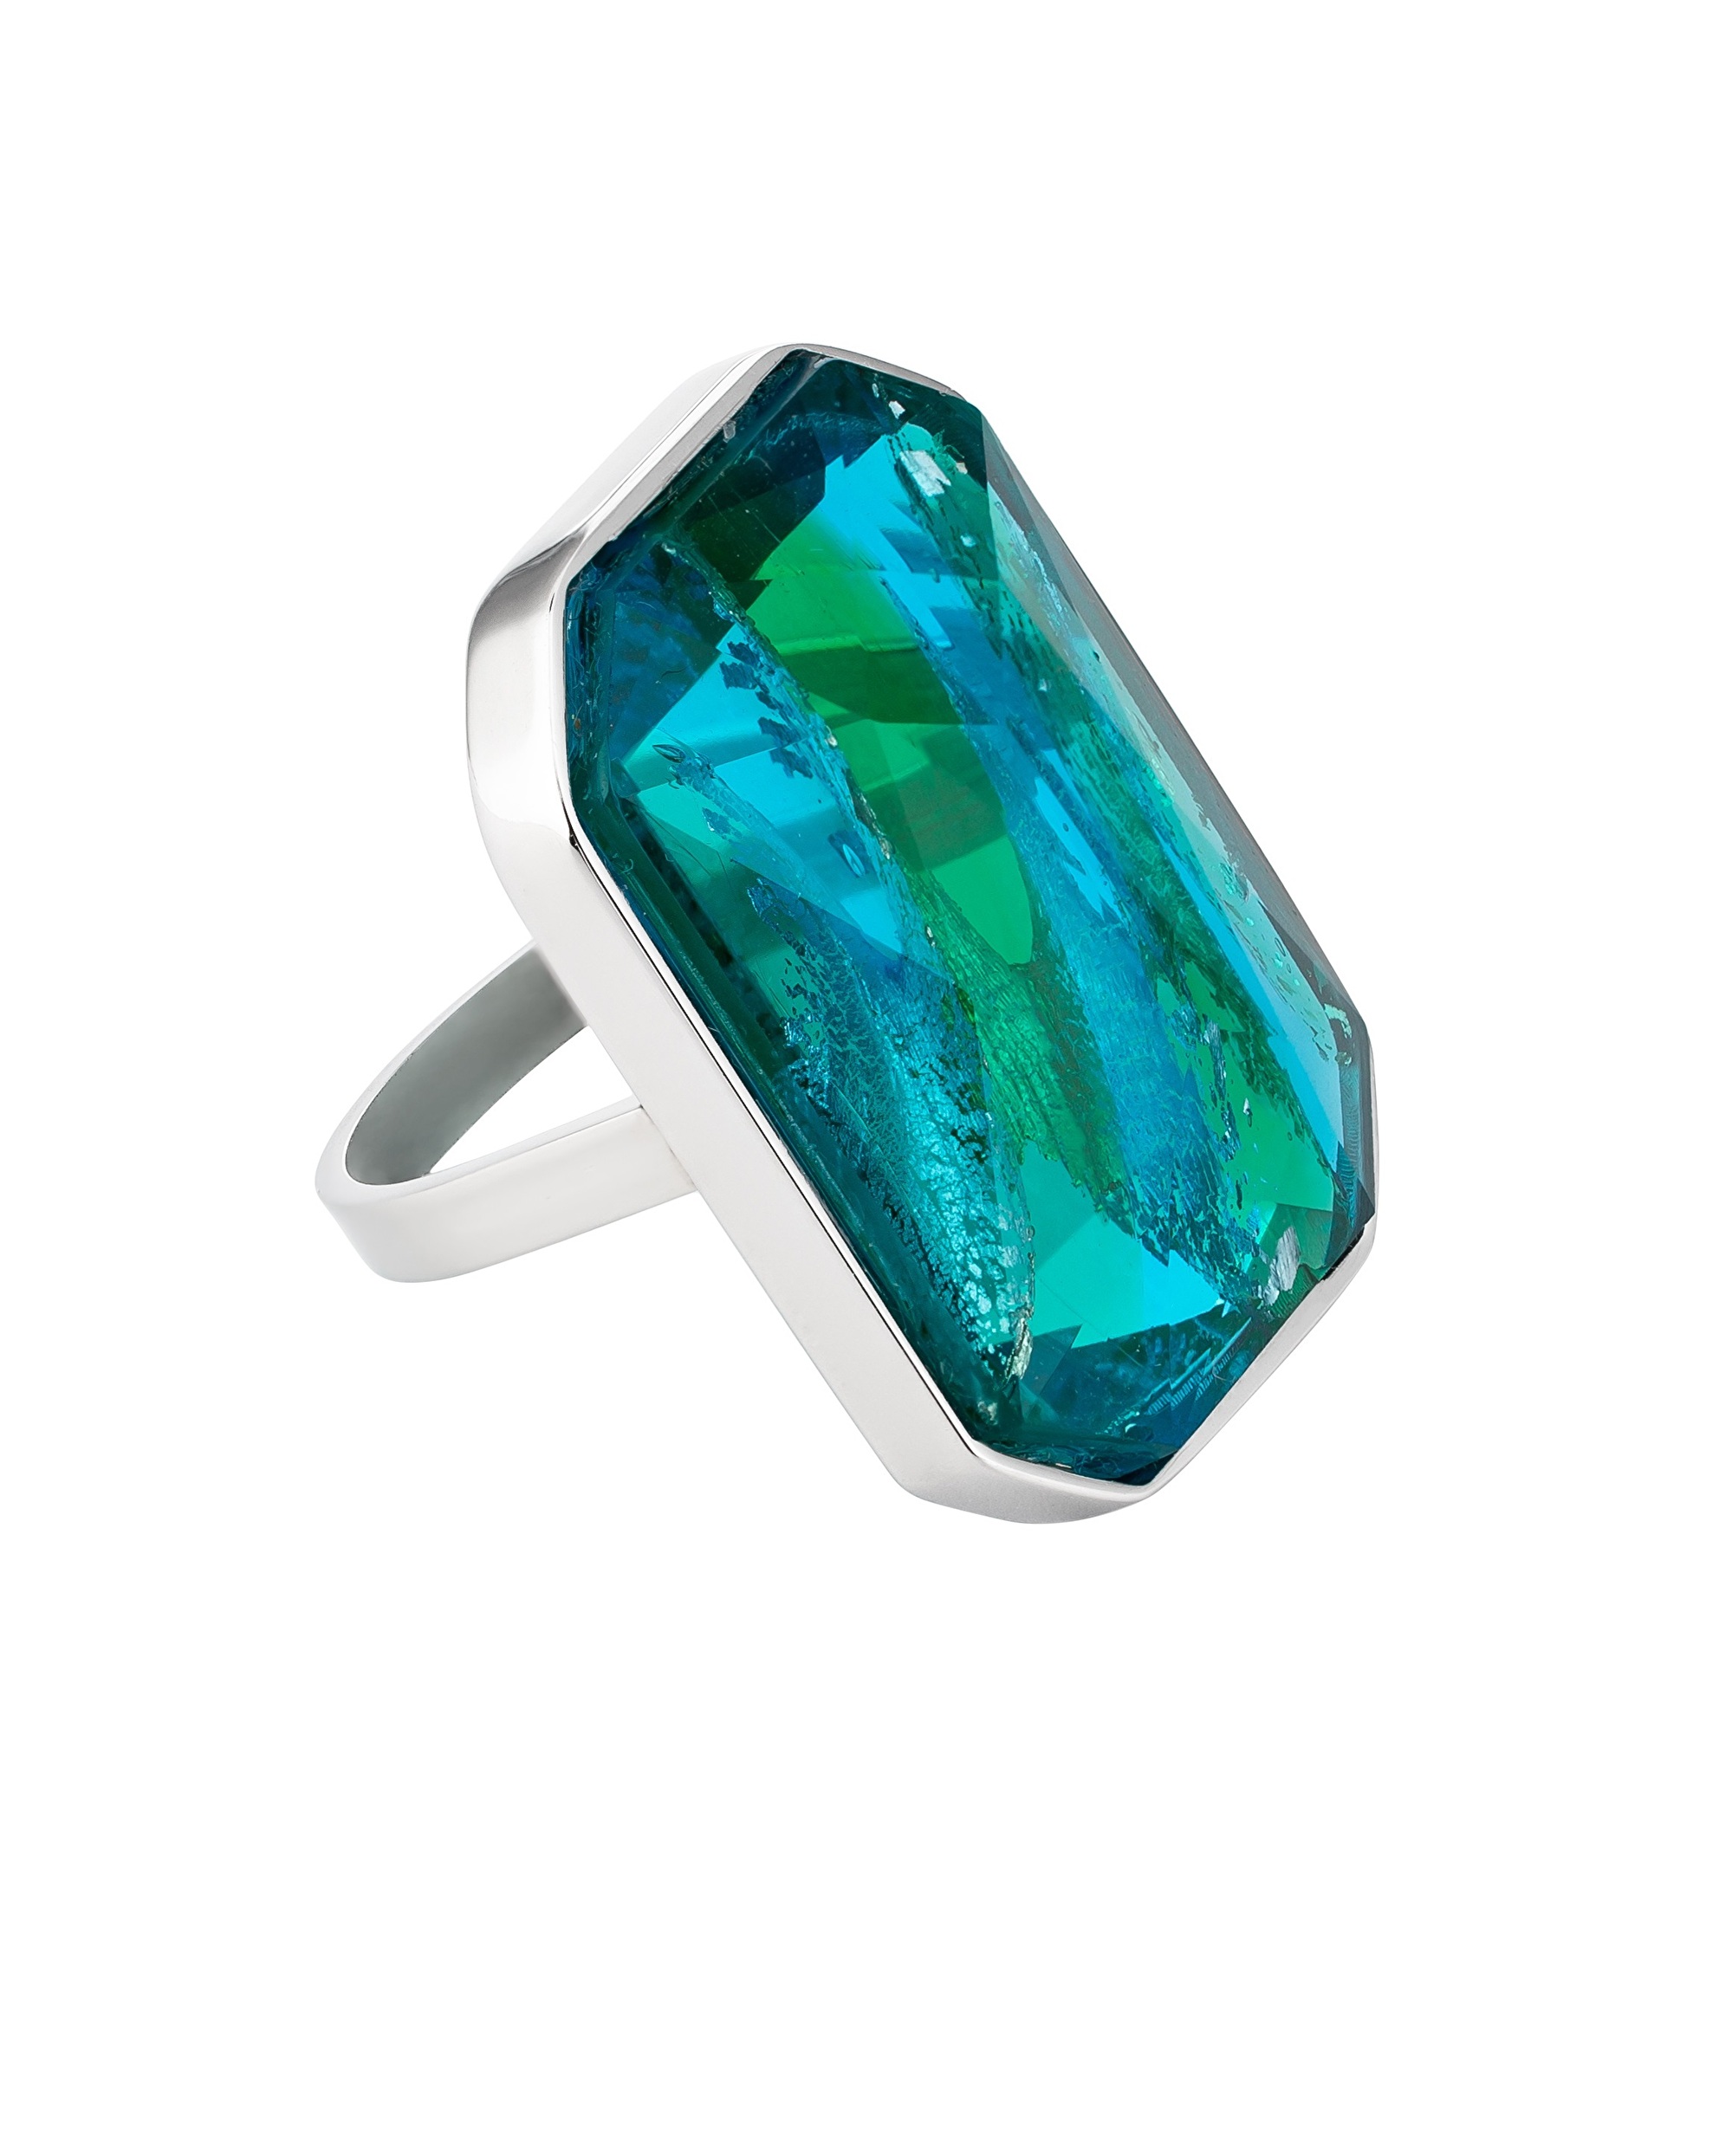 Preciosa Luxusní ocelový prsten s ručně mačkaným kamenem českého křišťálu Preciosa Ocean Emerald 7446 66 57 mm